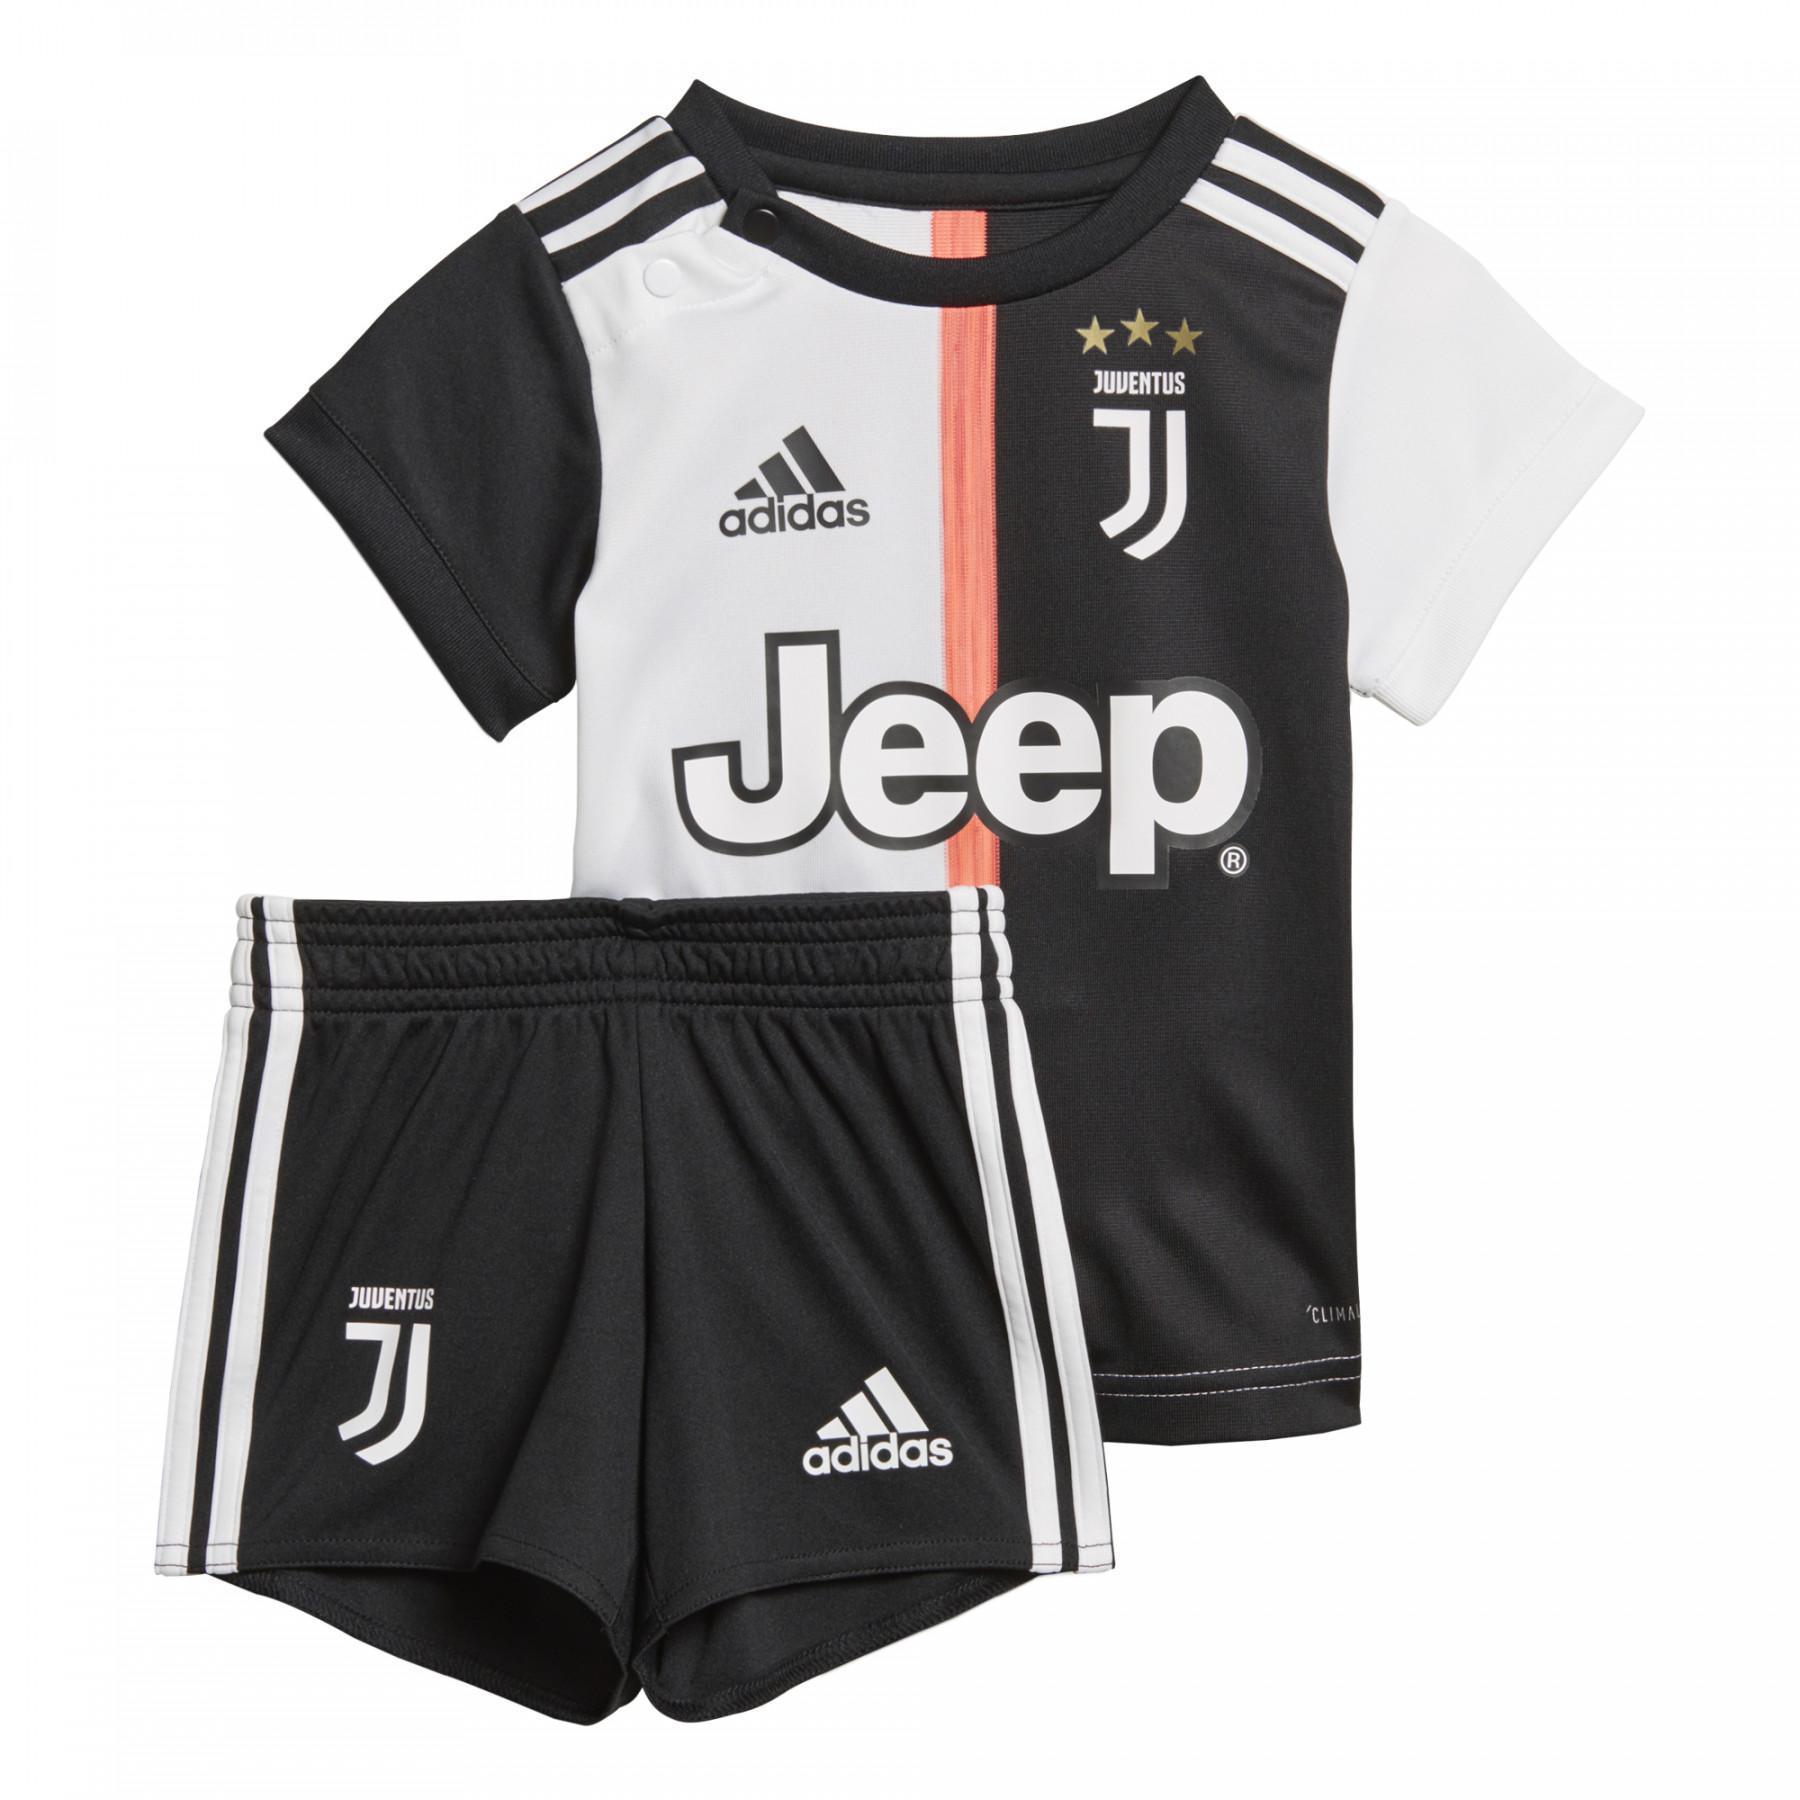 Baby-kit home Juventus 2019/20